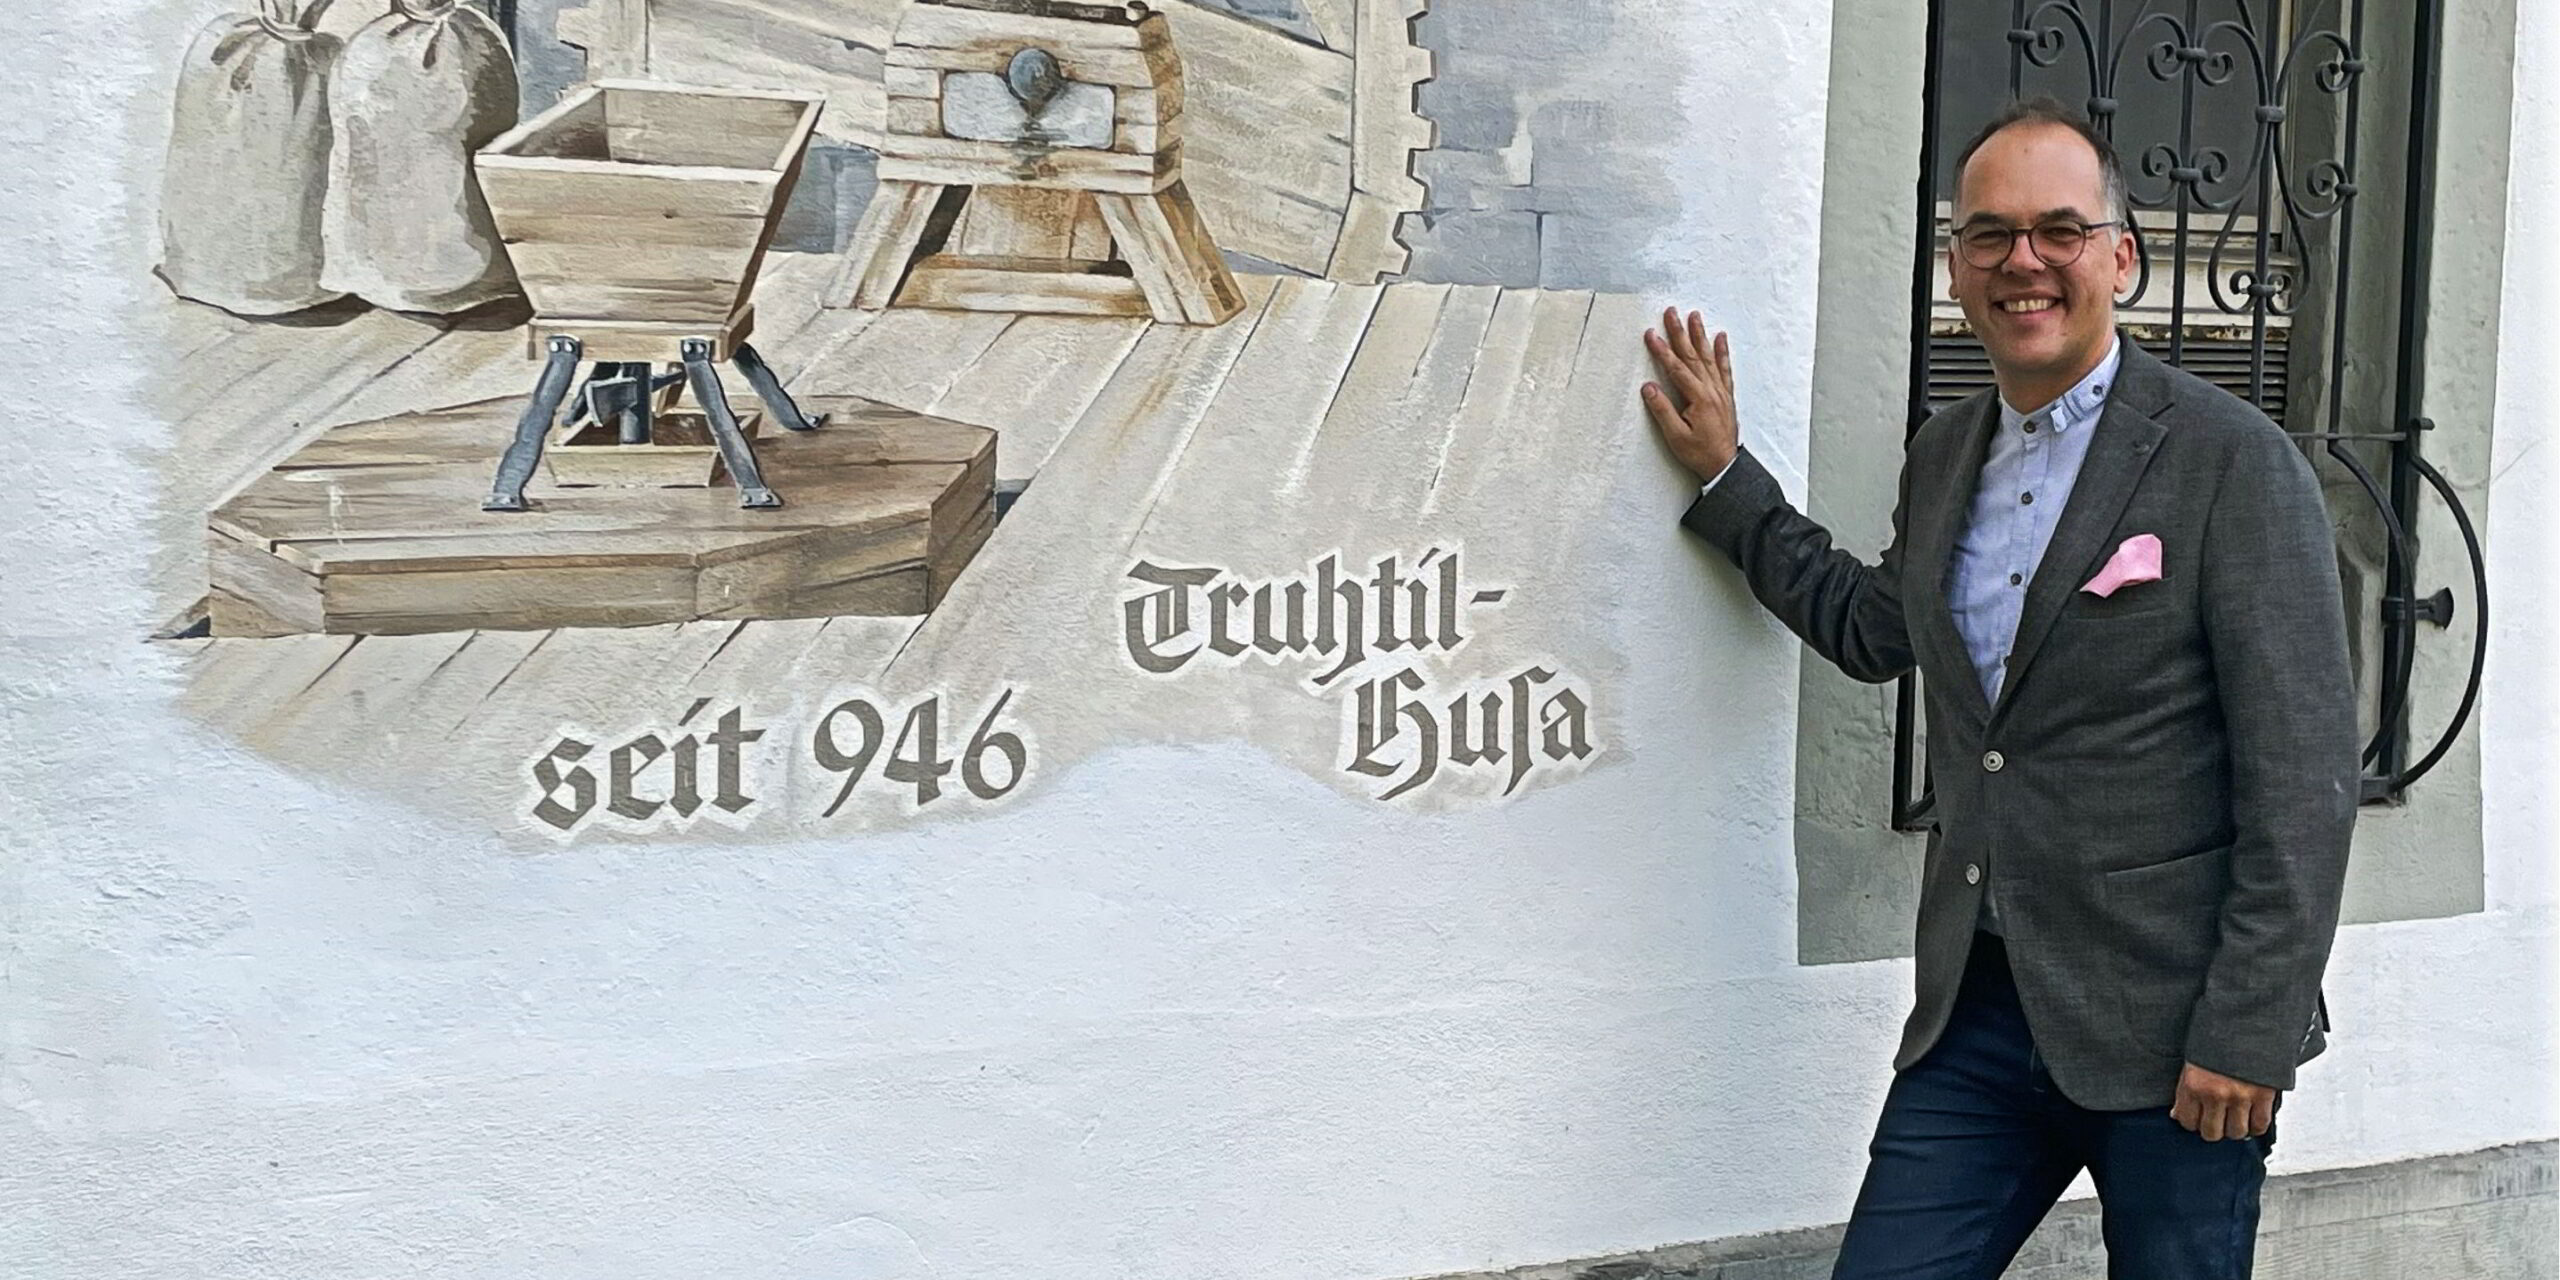 Innovation trifft auf Tradition: Christian Krahnstöver vor dem Truhtil-Husa-Gemälde. (Bild: bms)